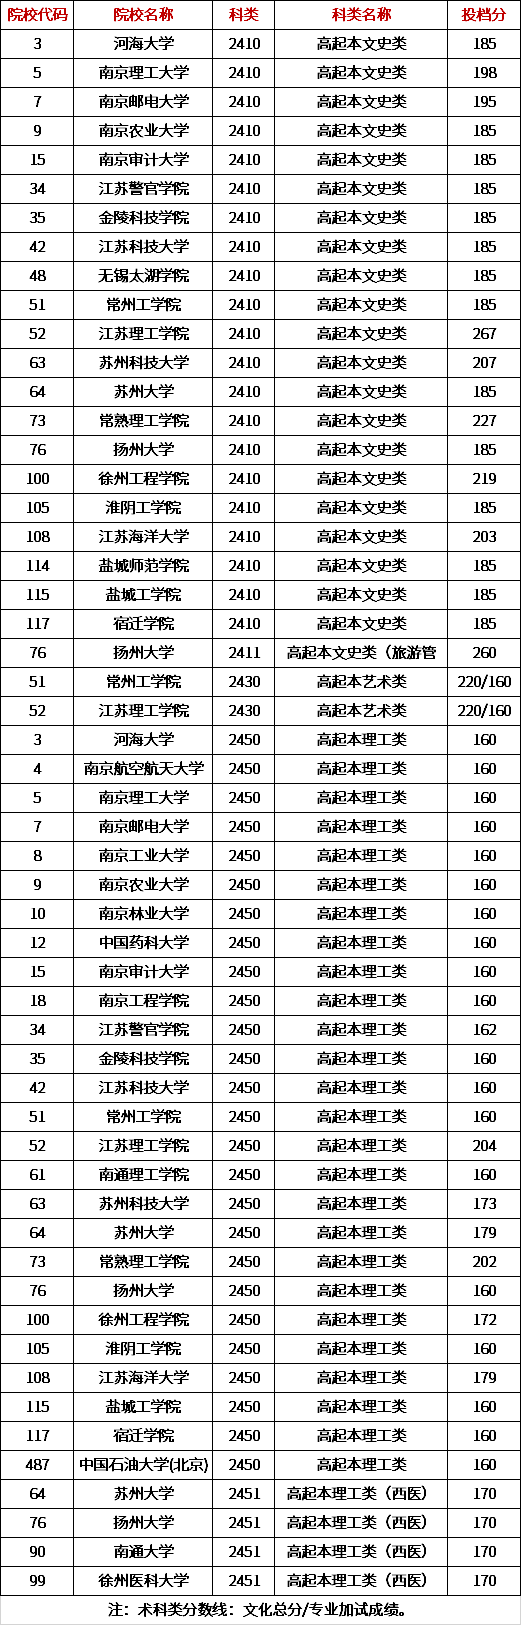 江苏省2020年成人高考高起本省控线上预填志愿投档分数线.png